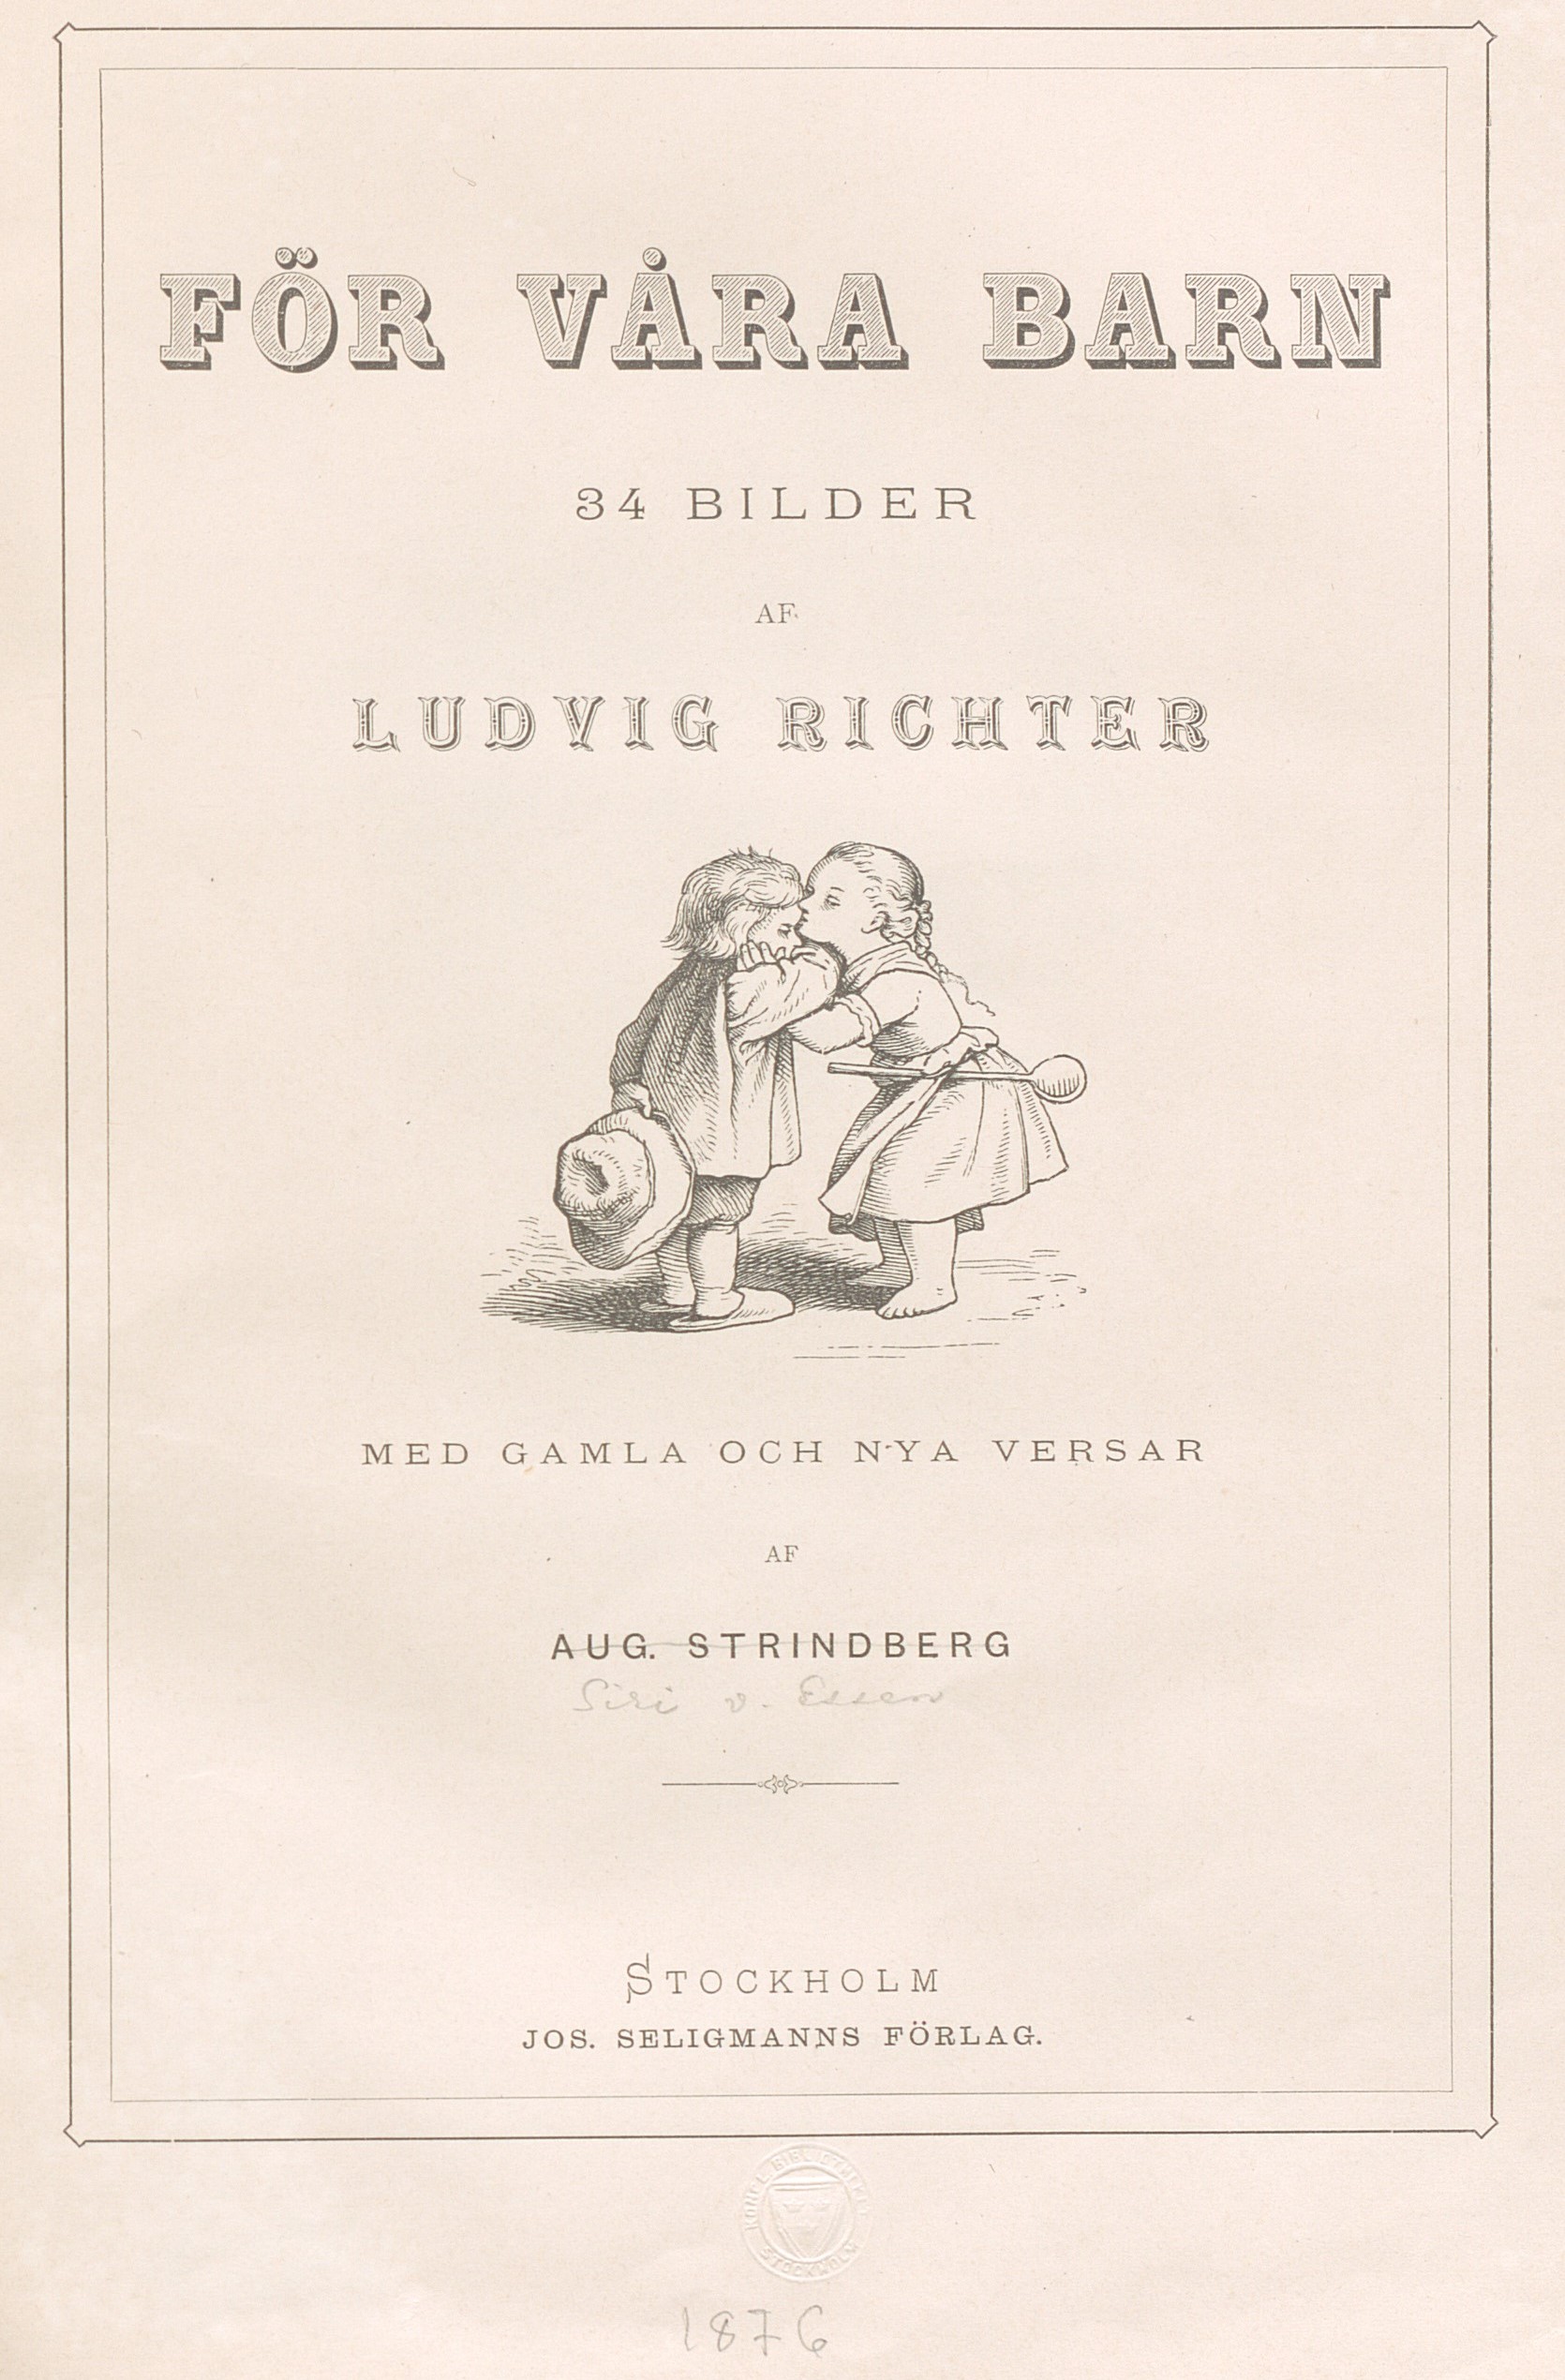 Illustration i svartvitt från boks framsida. En flicka pussar en pojke på pannan, författarnamnet Aug. Strindberg är överstruket och ersatt av Siri von Essen.